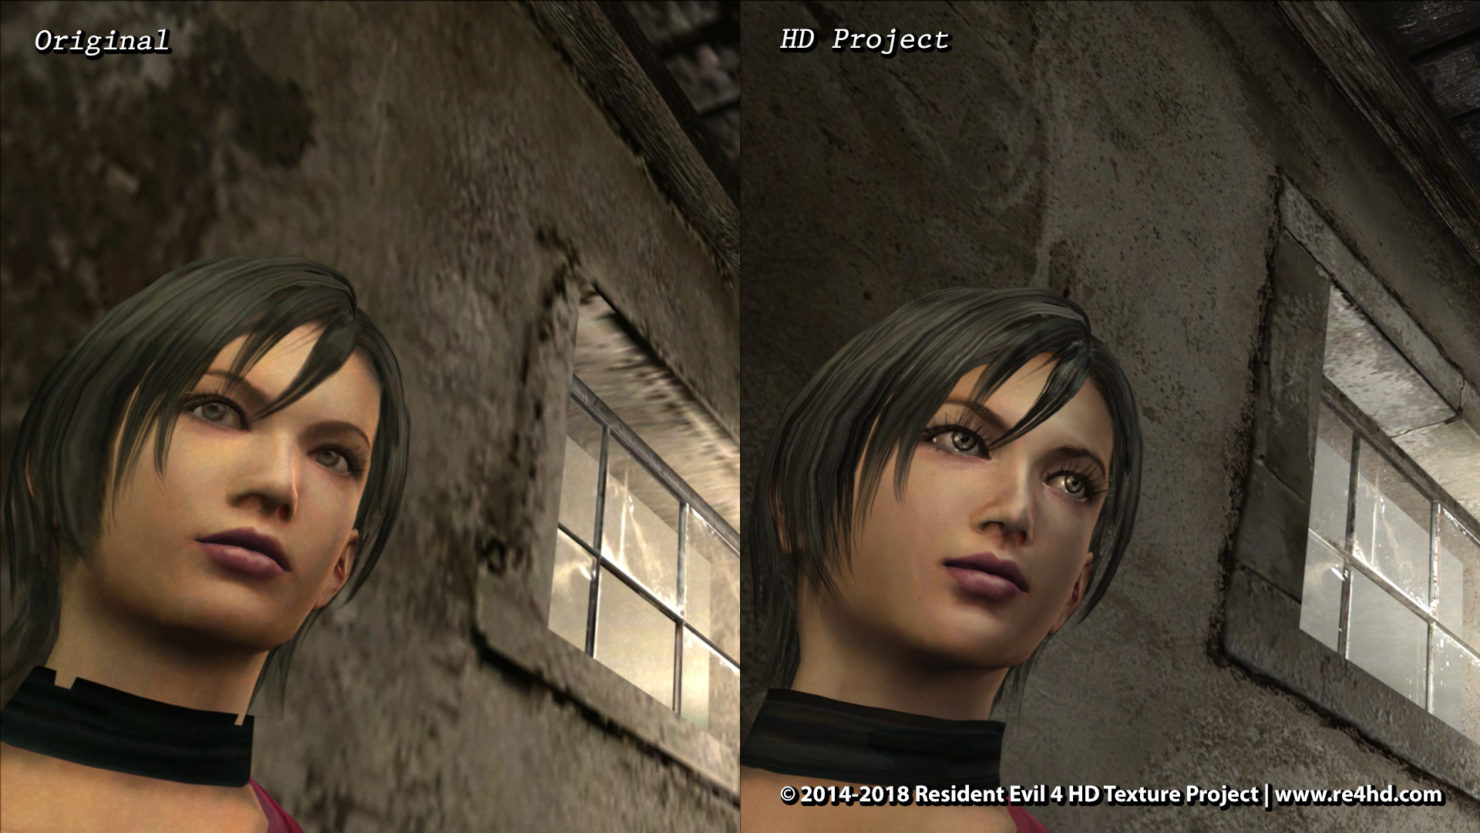 《生化危机4》HD计划人物模型对比 高清艾达王更美丽